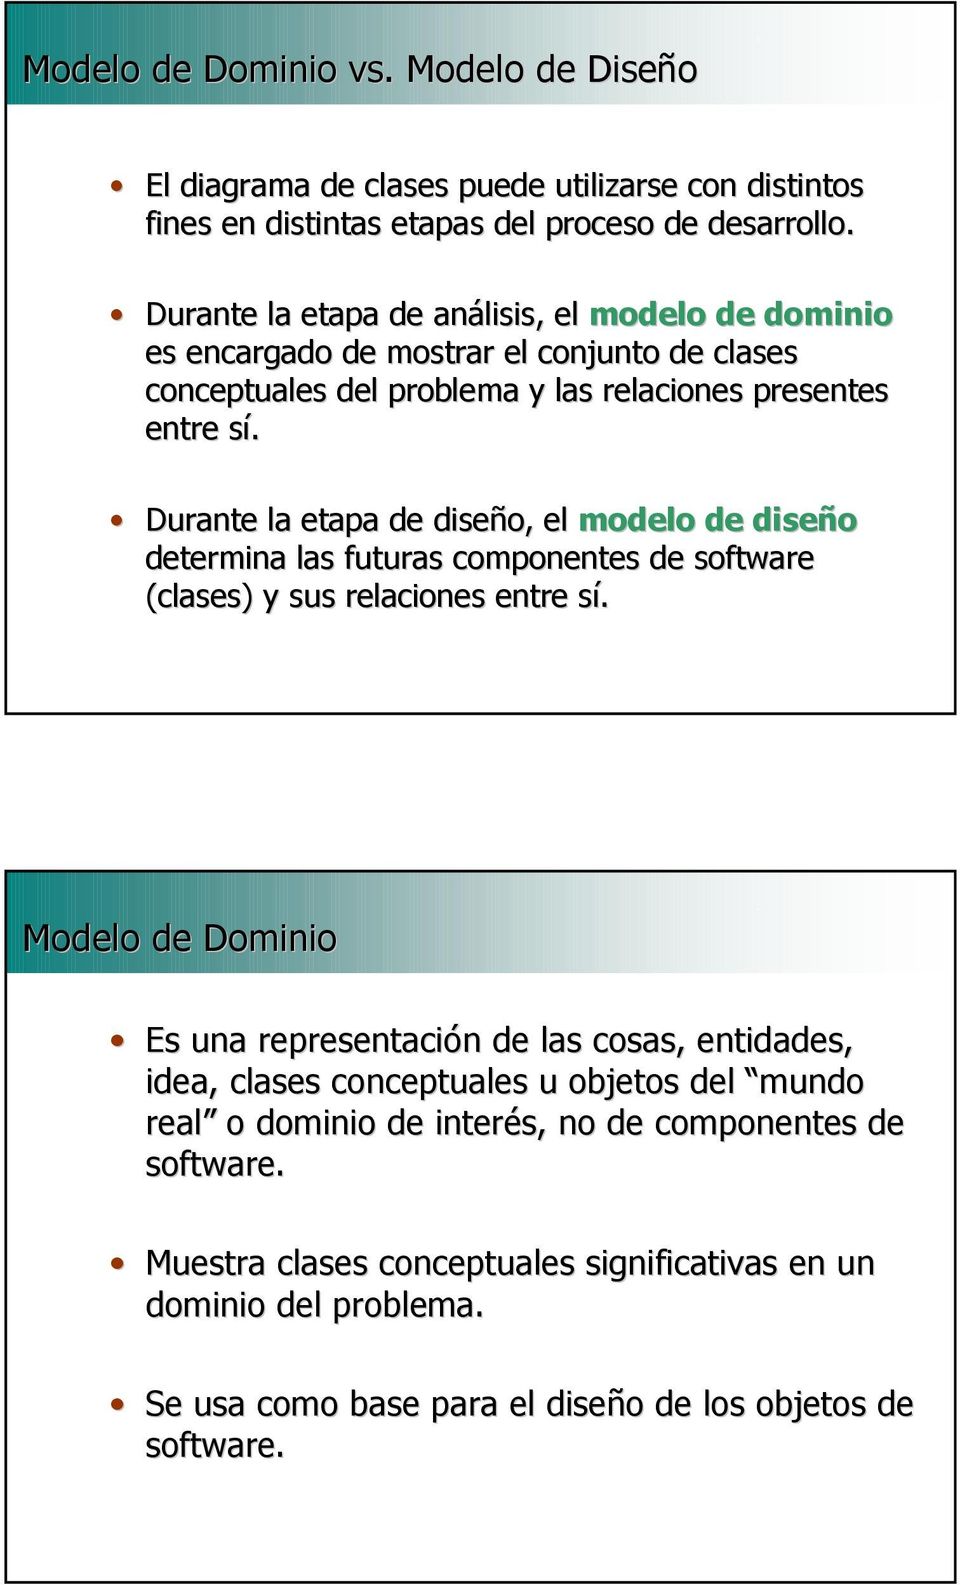 Durante la etapa de diseño, el modelo de diseño determina las futuras componentes de software (clases) y sus relaciones entre sí.